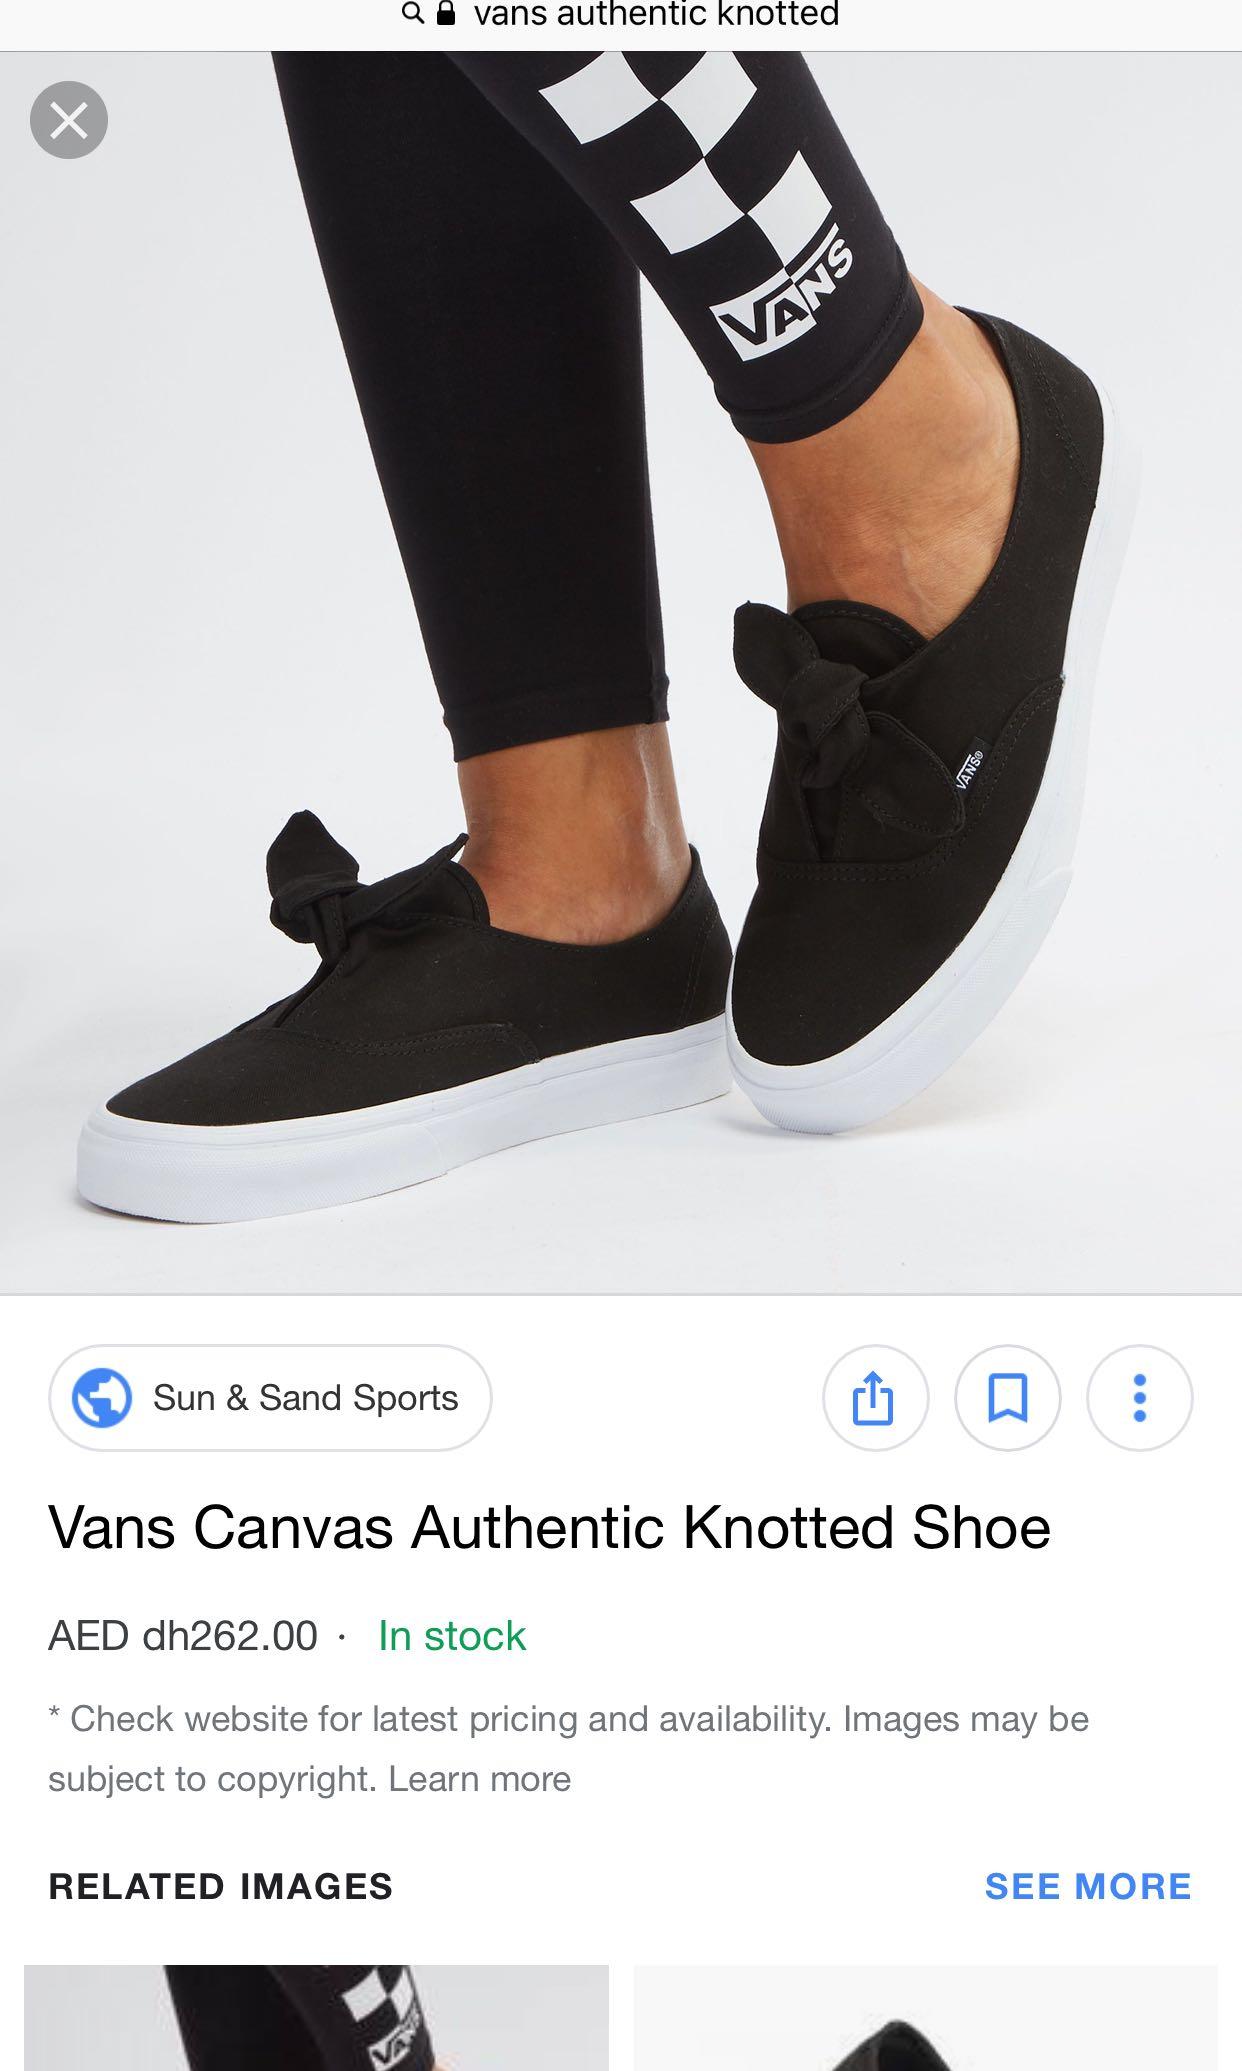 vans authentic knotted canvas shoes